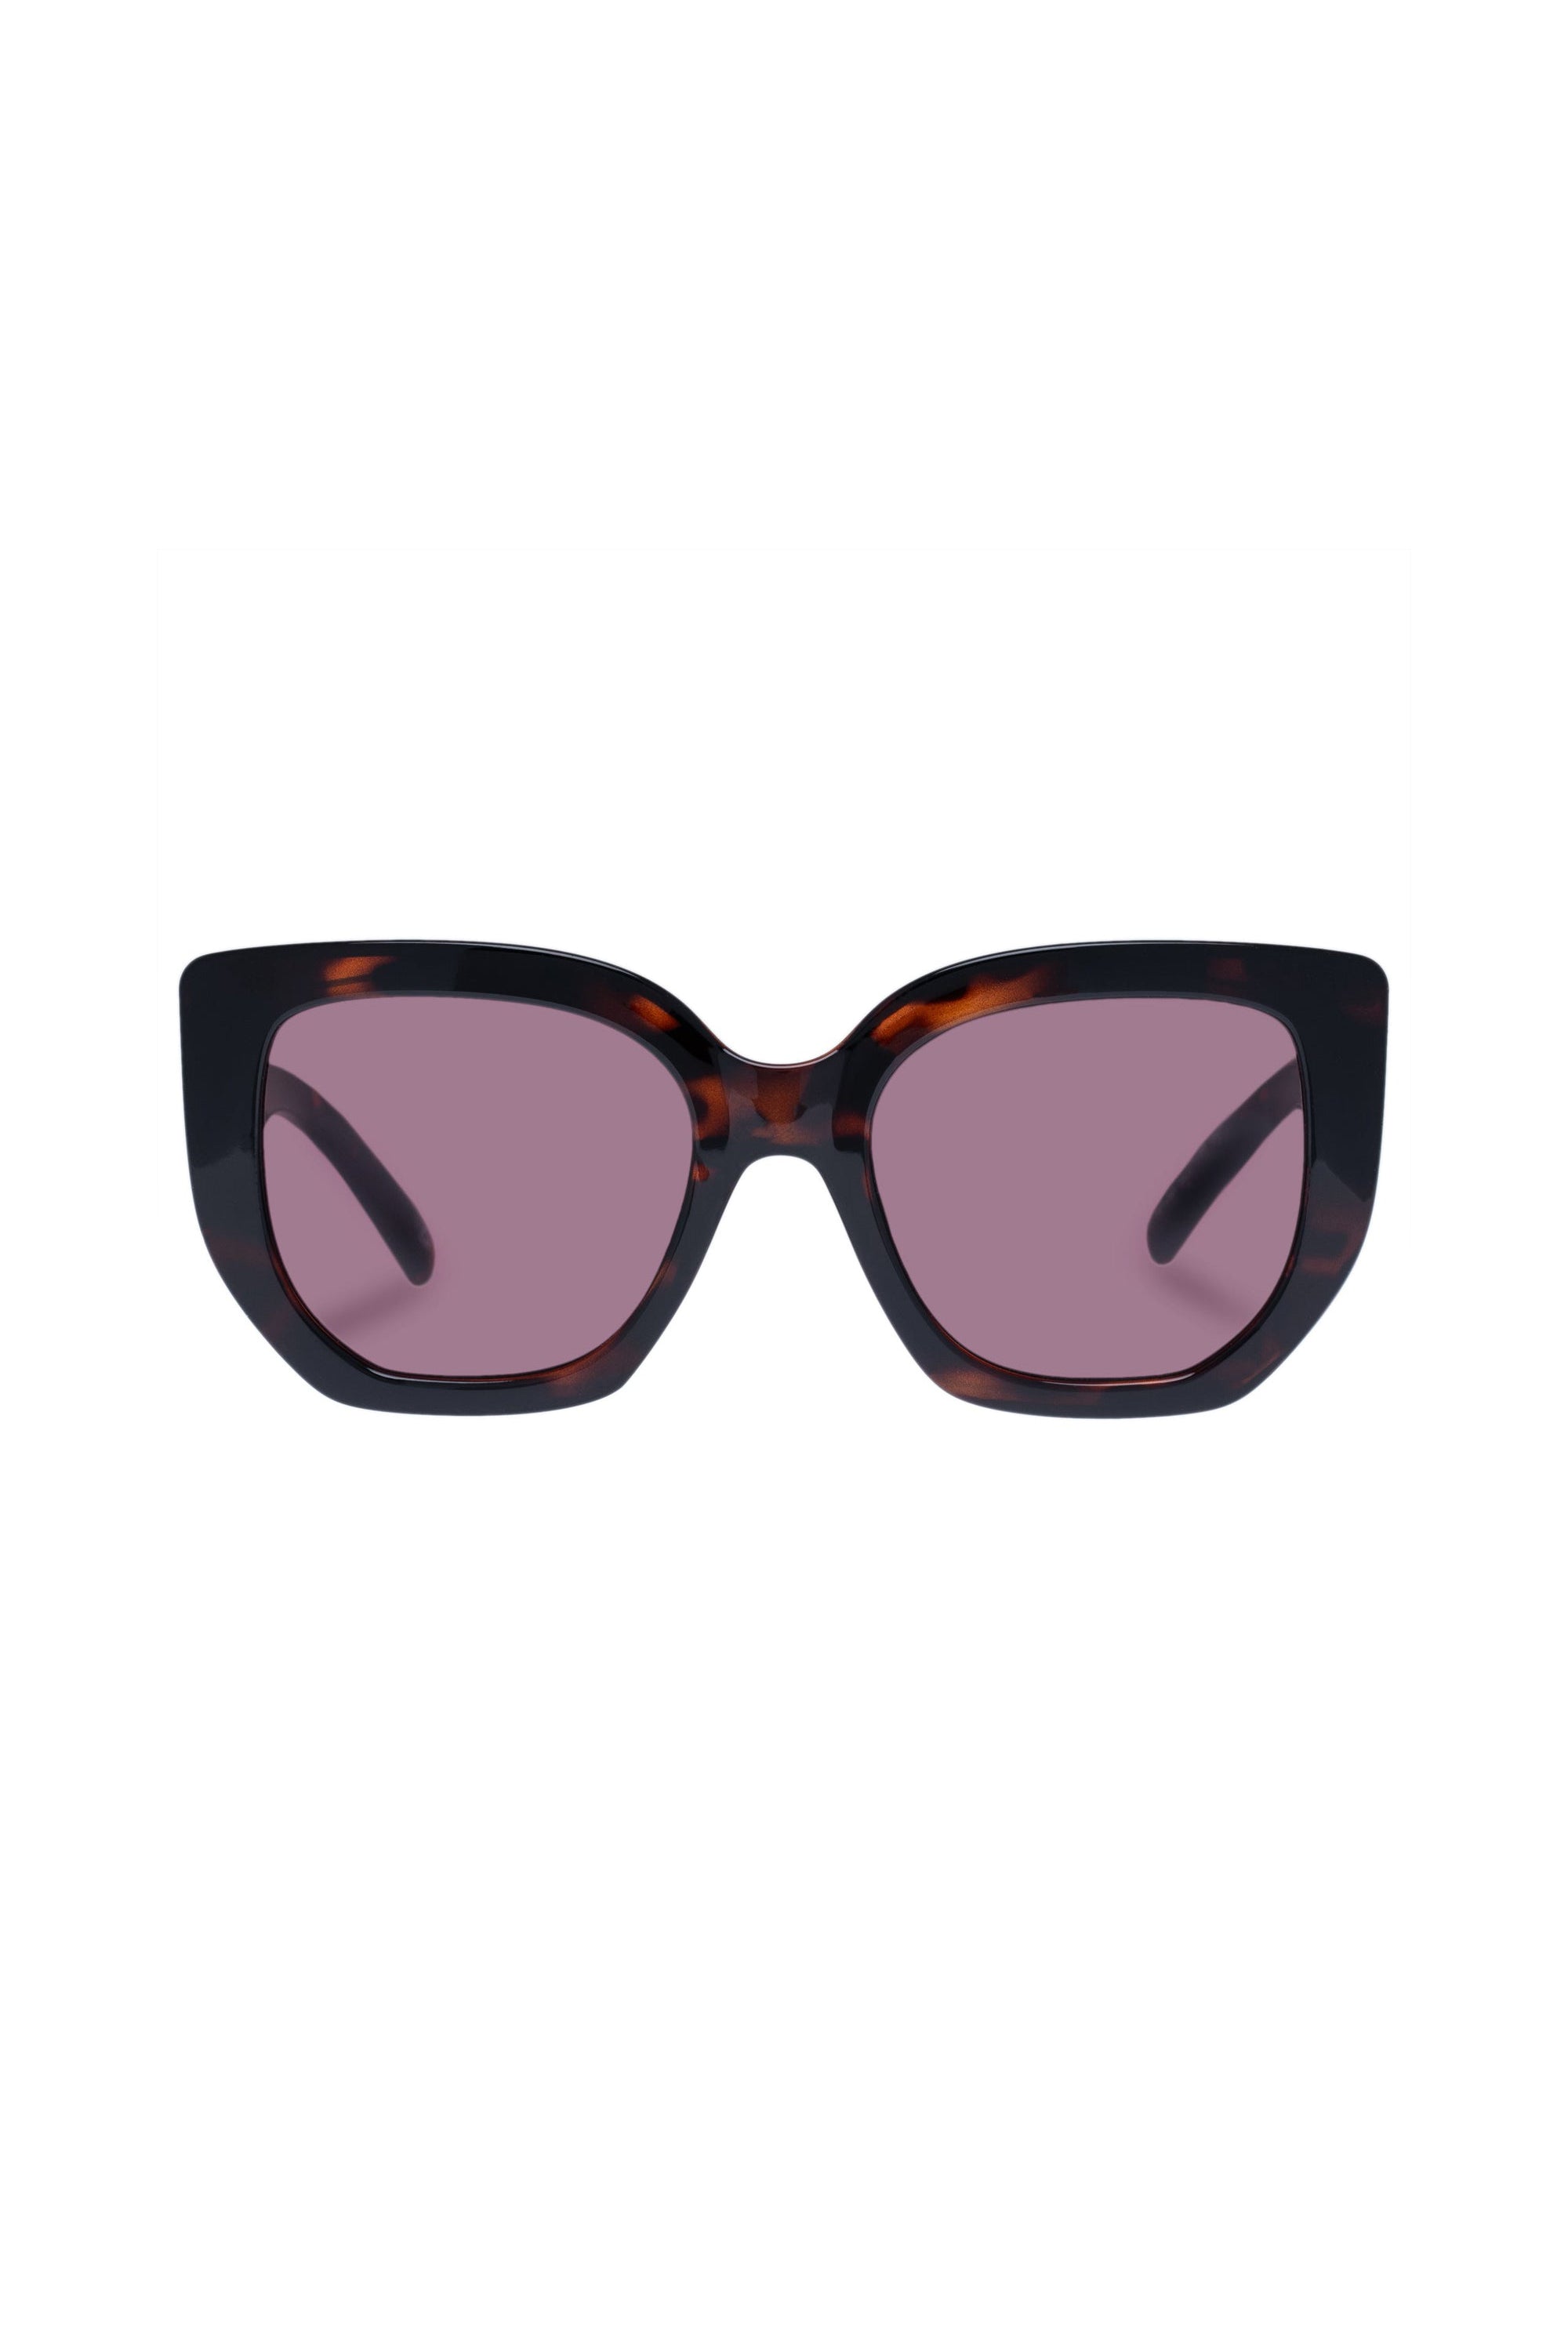 Le Specs Euphoria Sunglasses - Super Dark Tort - RUM Amsterdam